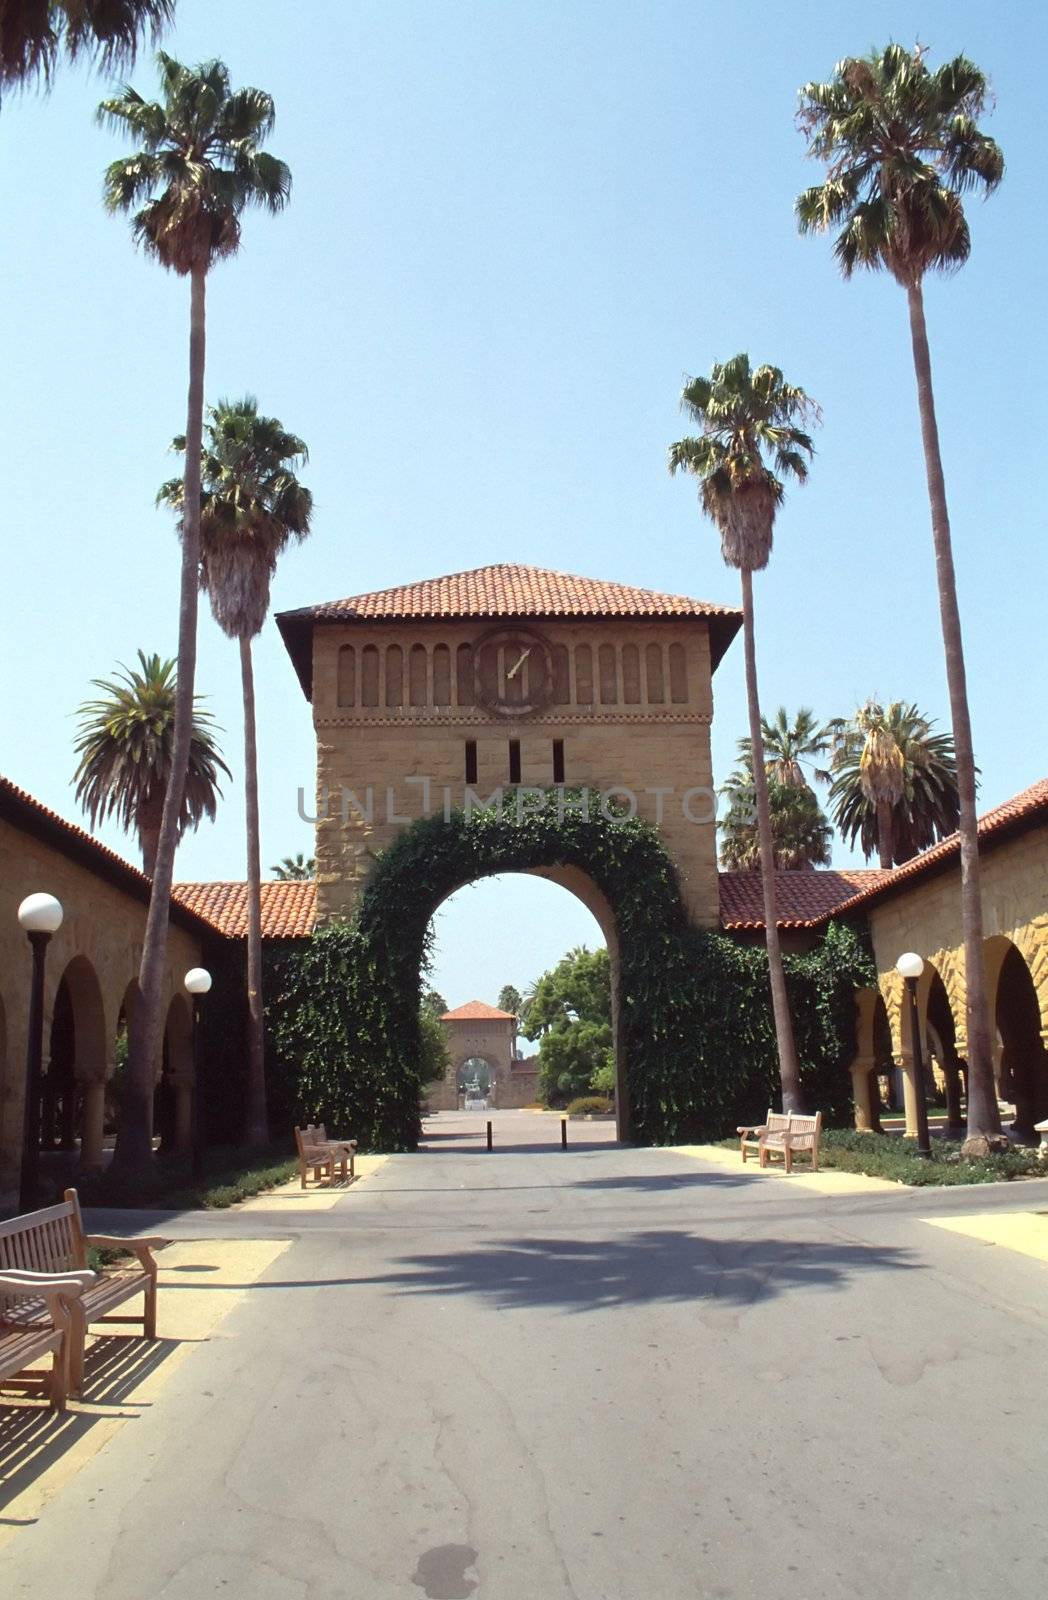 Stanford Campus in Palo Alto, North California.